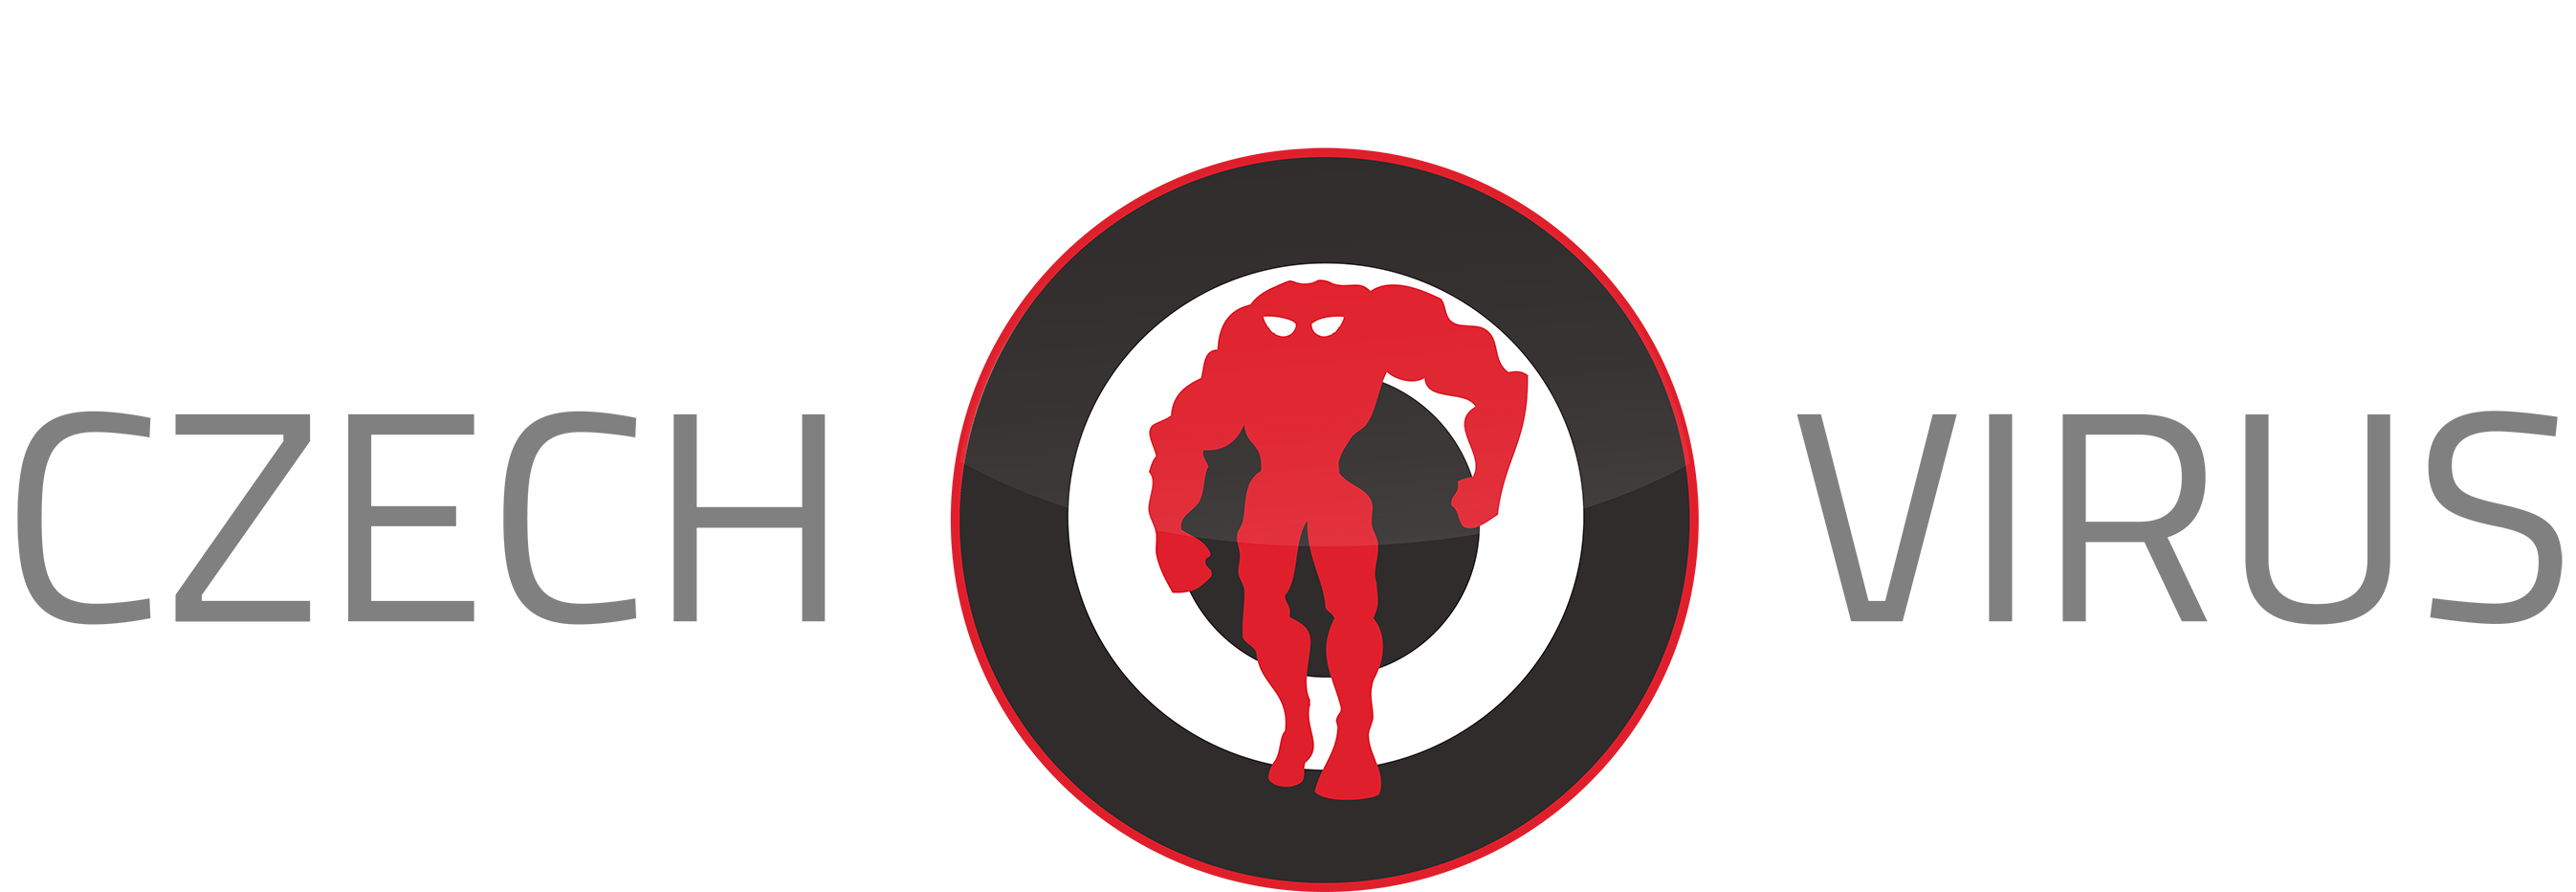 czech-virus-logo